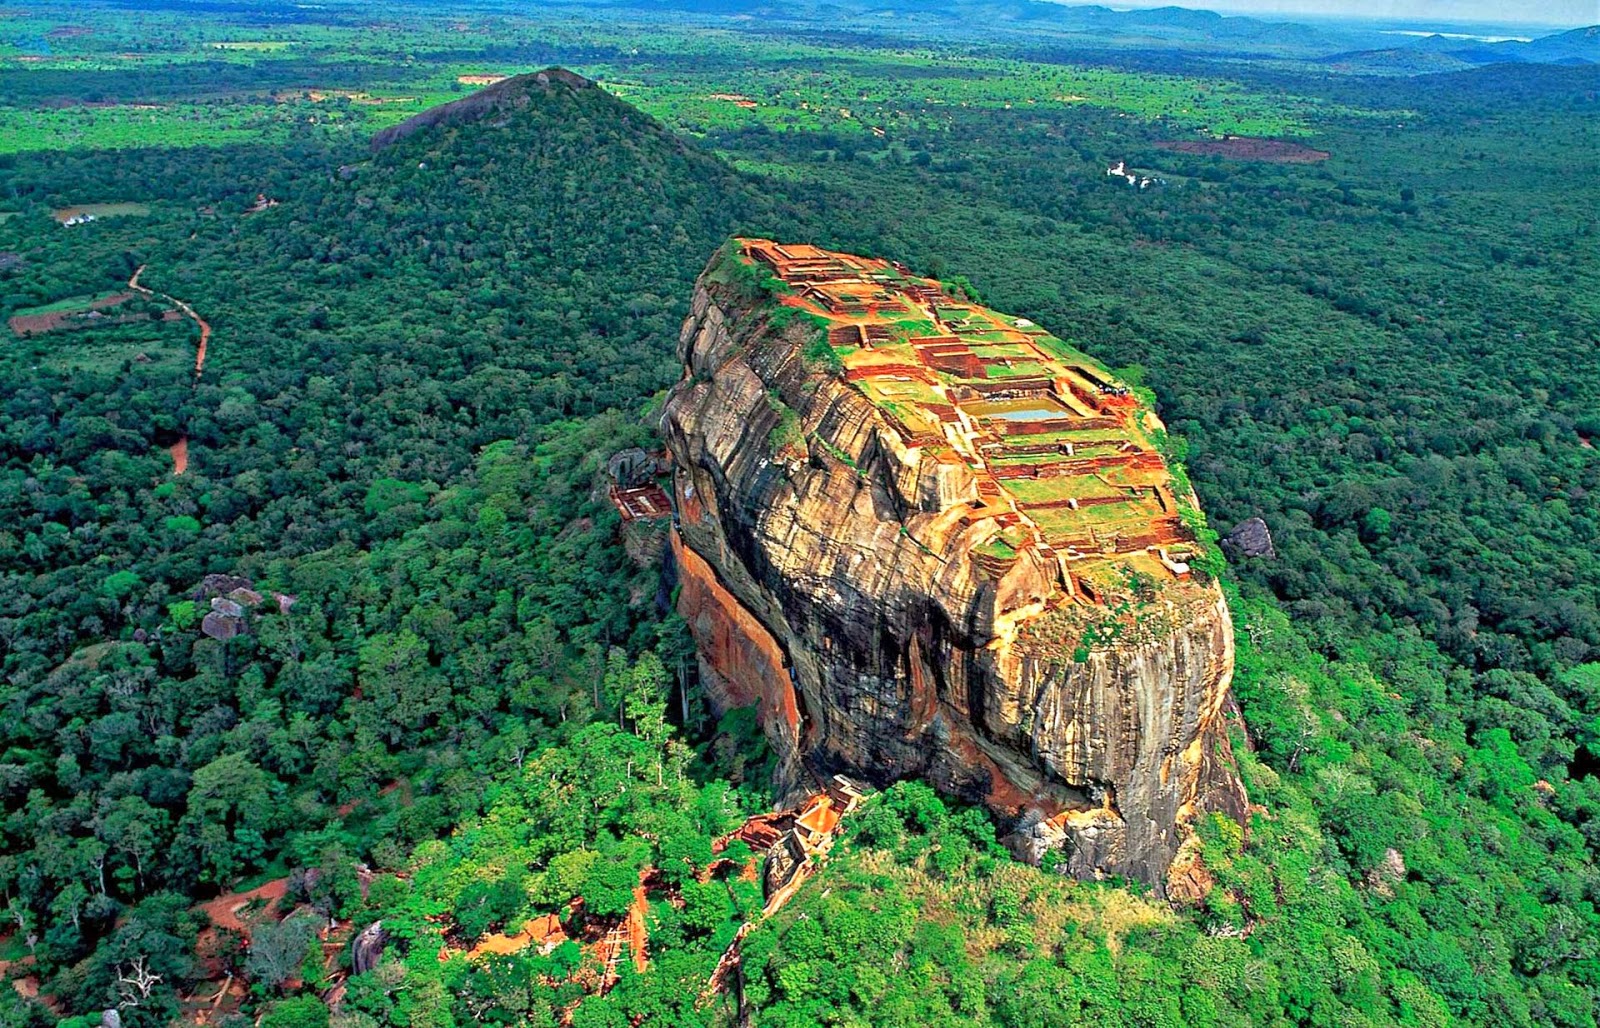 Khám phá núi sư tử Sigiriya ở Srilanka - DU LỊCH TOÀN PHÁT - @Officialsite